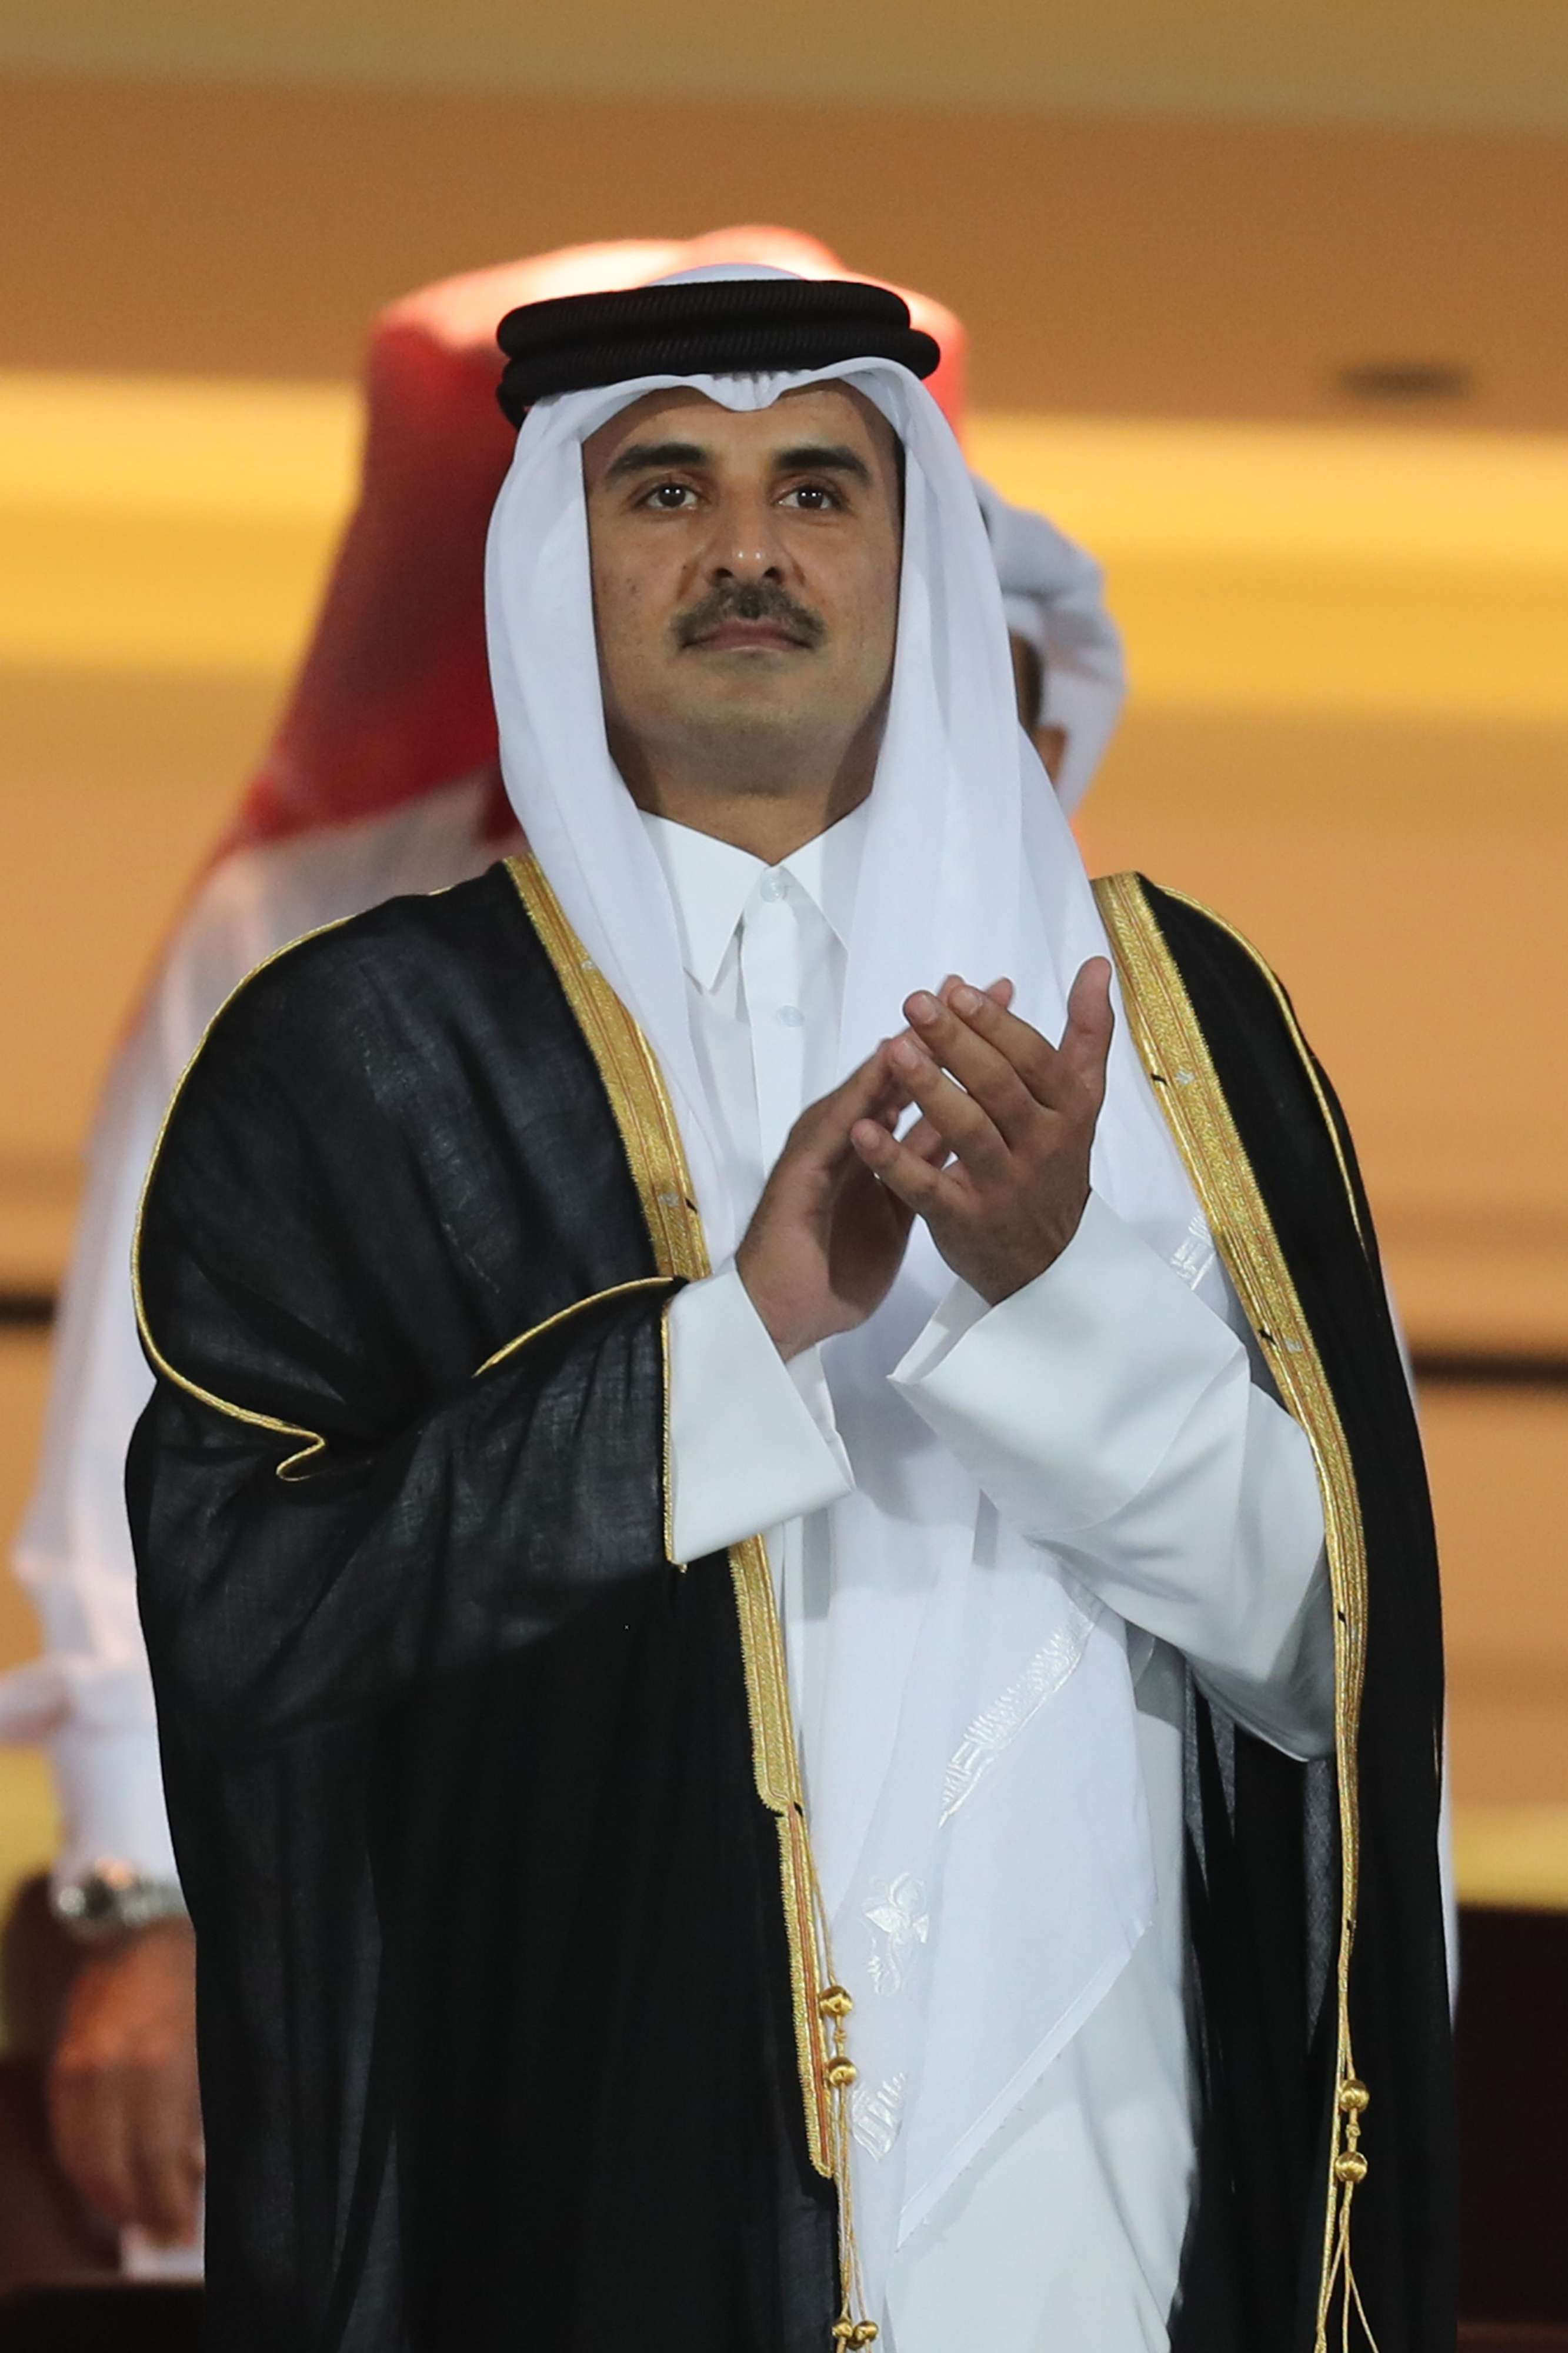 الشيخ تميم وصل إلى العاصمة الرواندية كغالي عشية القمة الخليجية في الرياض